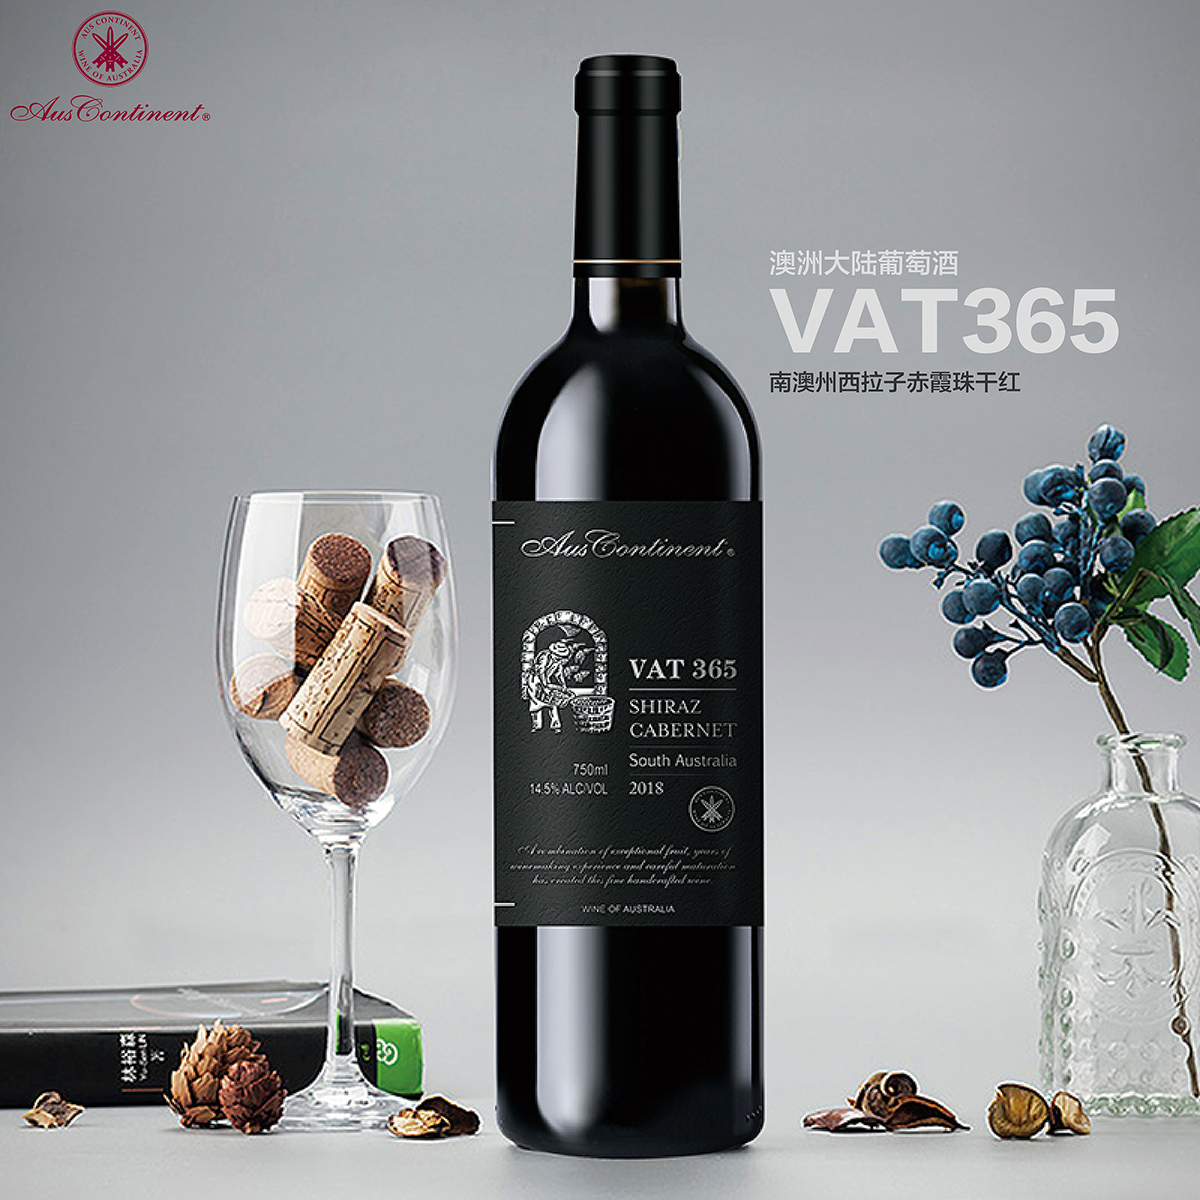 澳大利亚南澳产区澳洲大陆酒庄西拉赤霞珠VAT 365干红葡萄酒红酒